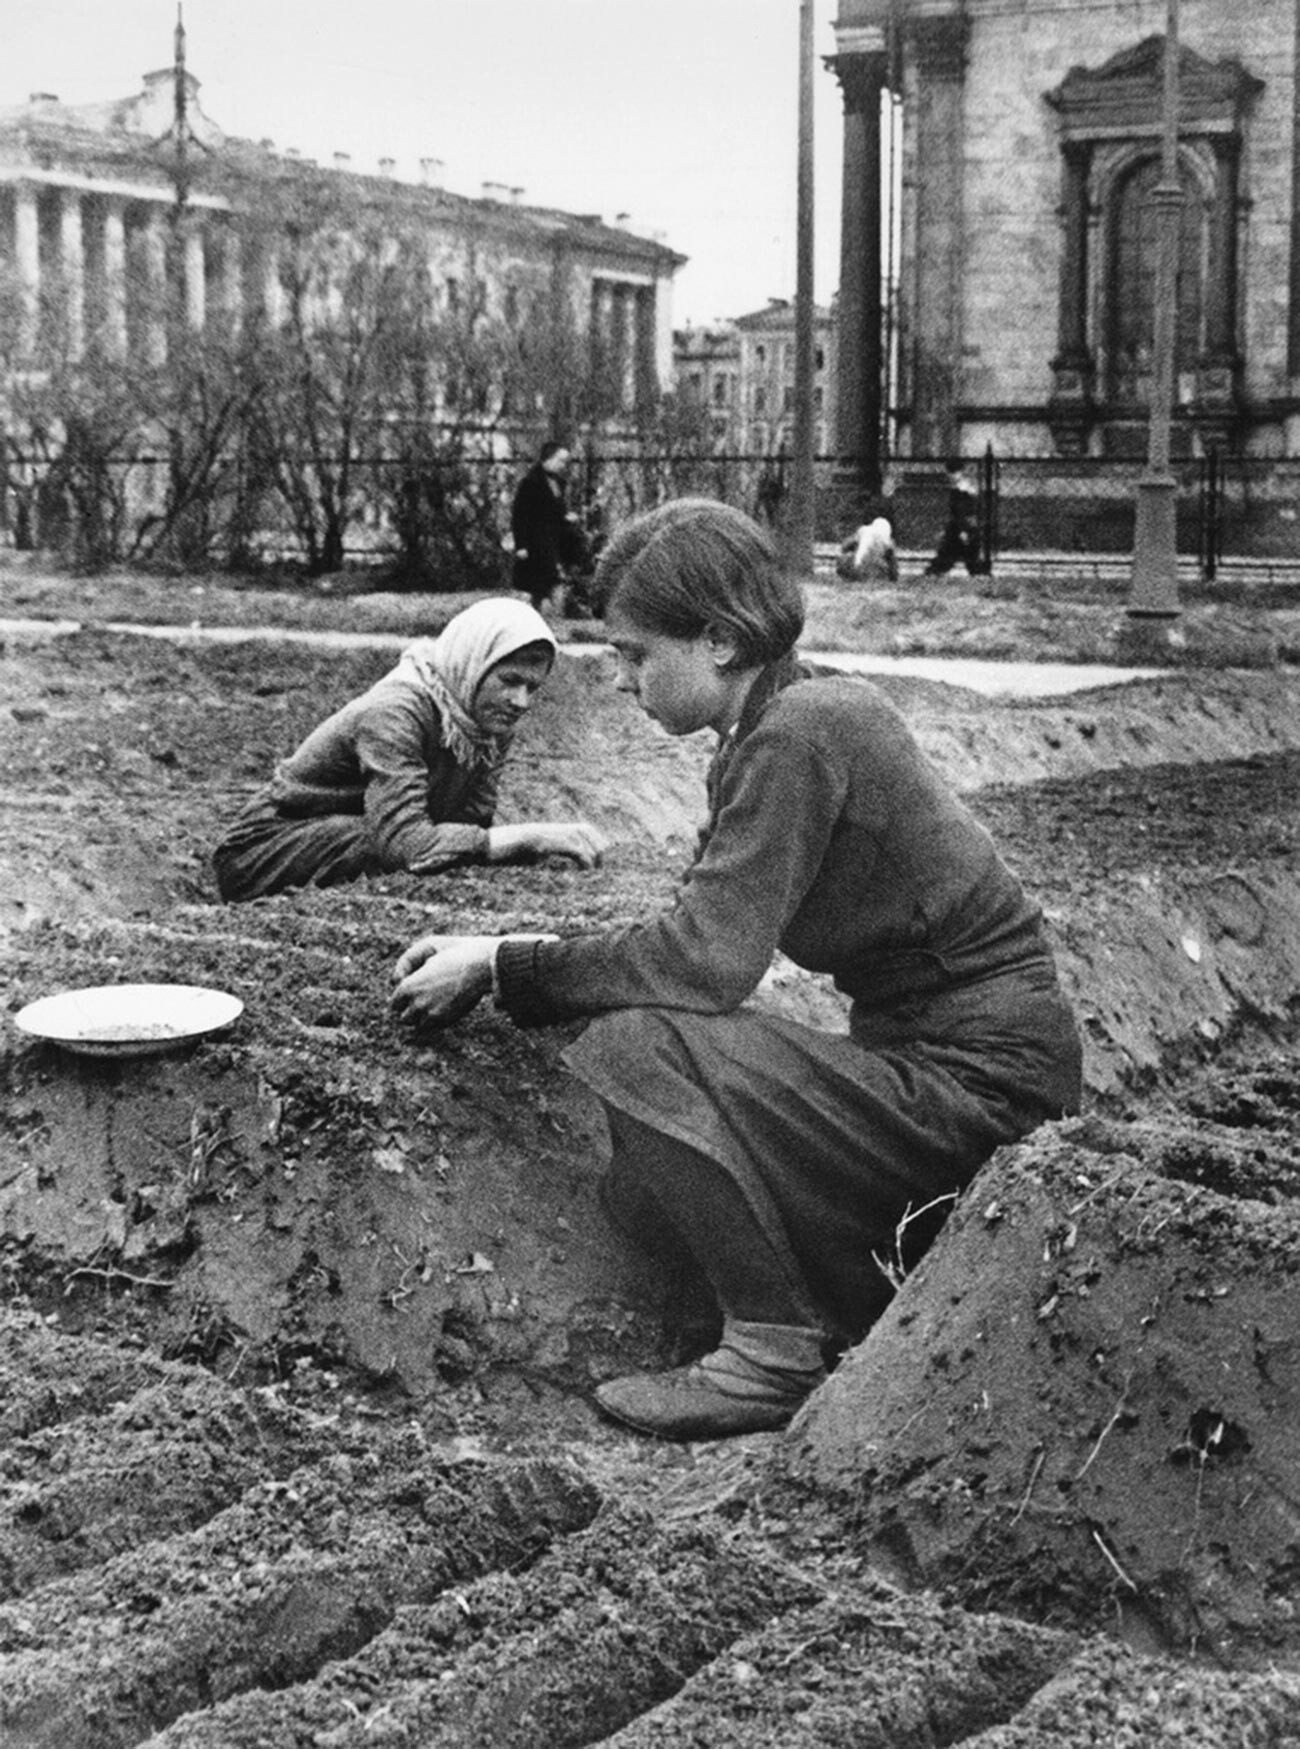 第二次世界大戦の特に暗い一幕が、900日近く続いたレニングラード包囲だ。「本土」から切り離されて補給を絶たれた市民は、食糧や暖房がない中で生き延びなければならなかった。下の写真では、女性たちが街の中心部、聖イサアク大聖堂のそばで野菜を育てている（大聖堂は街の目印となるためナチスの空爆を免れた）。